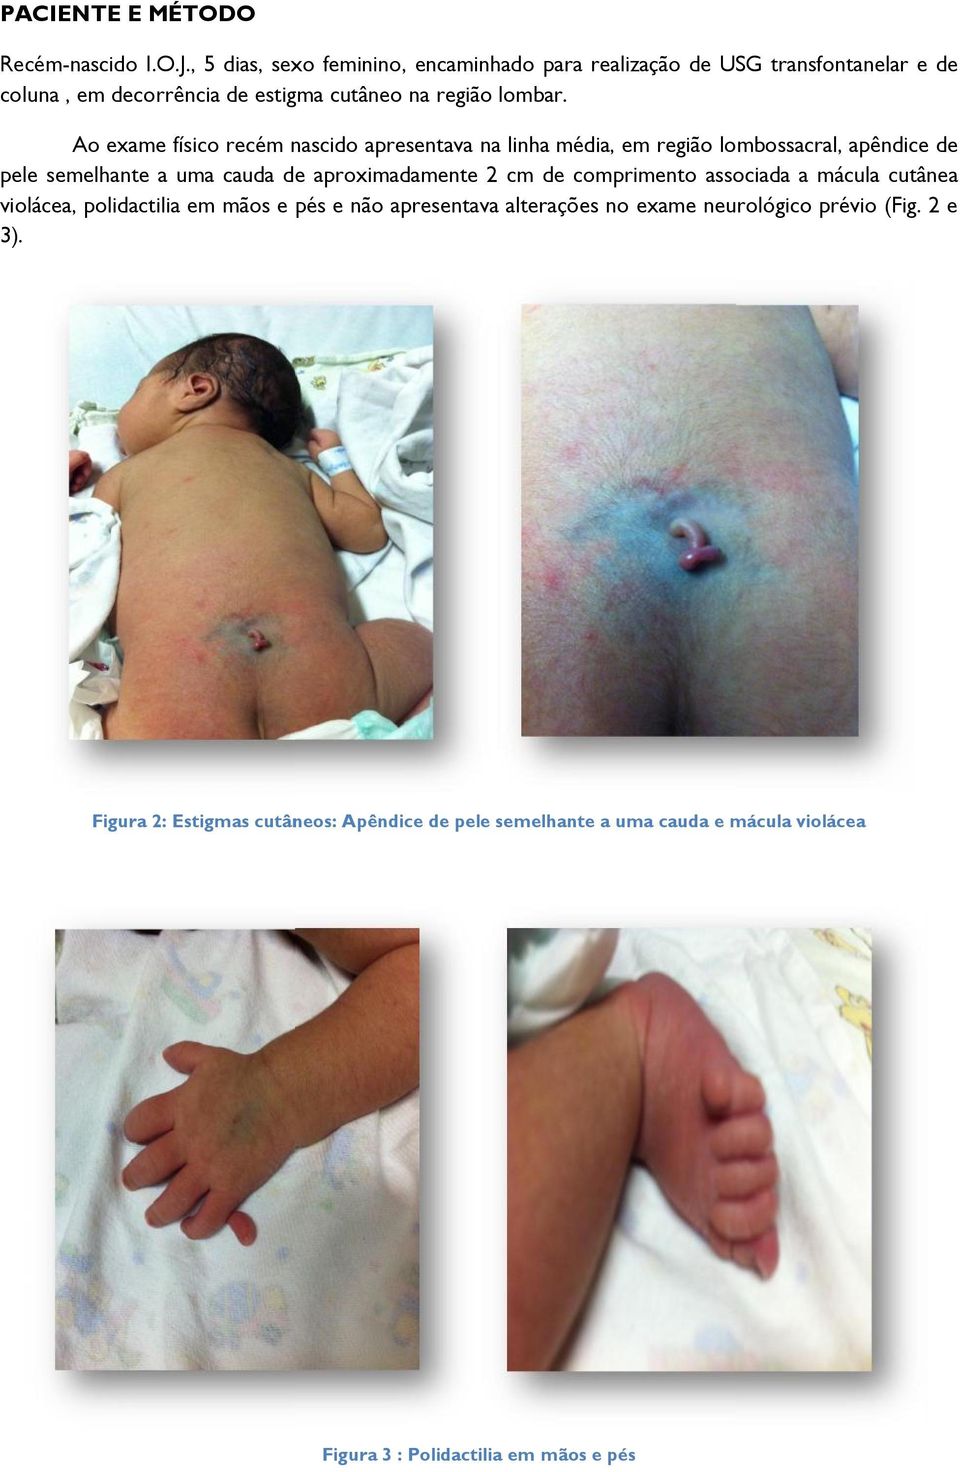 Ao exame físico recém nascido apresentava na linha média, em região lombossacral, apêndice de pele semelhante a uma cauda de aproximadamente 2 cm de